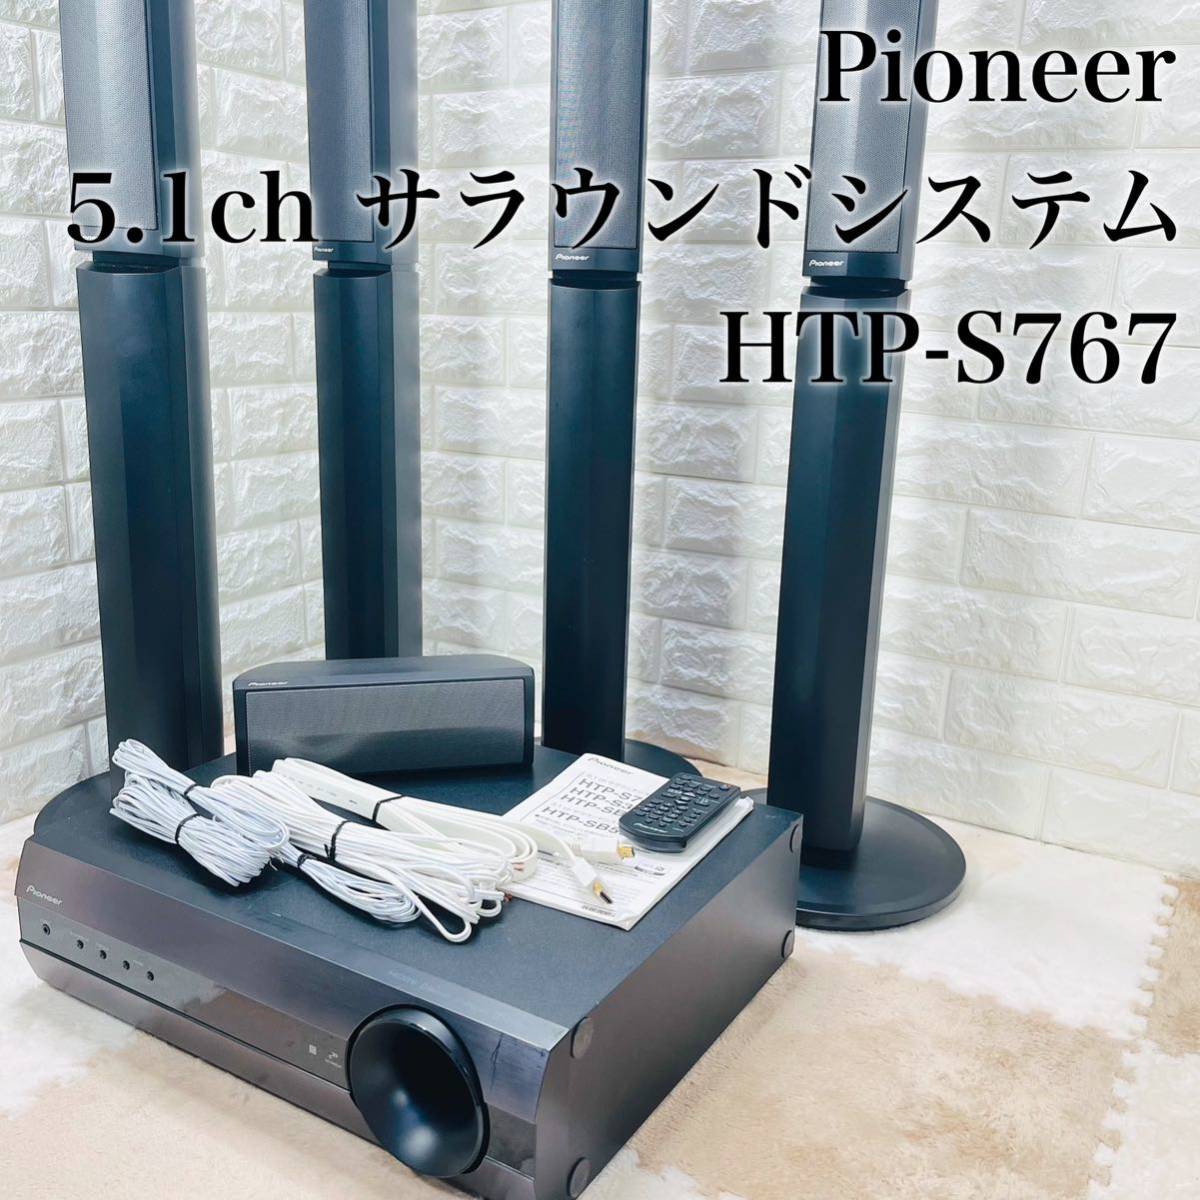 最新作高品質 Pioneer 5.1chサラウンドシステムHTP-S767 付属品超多数